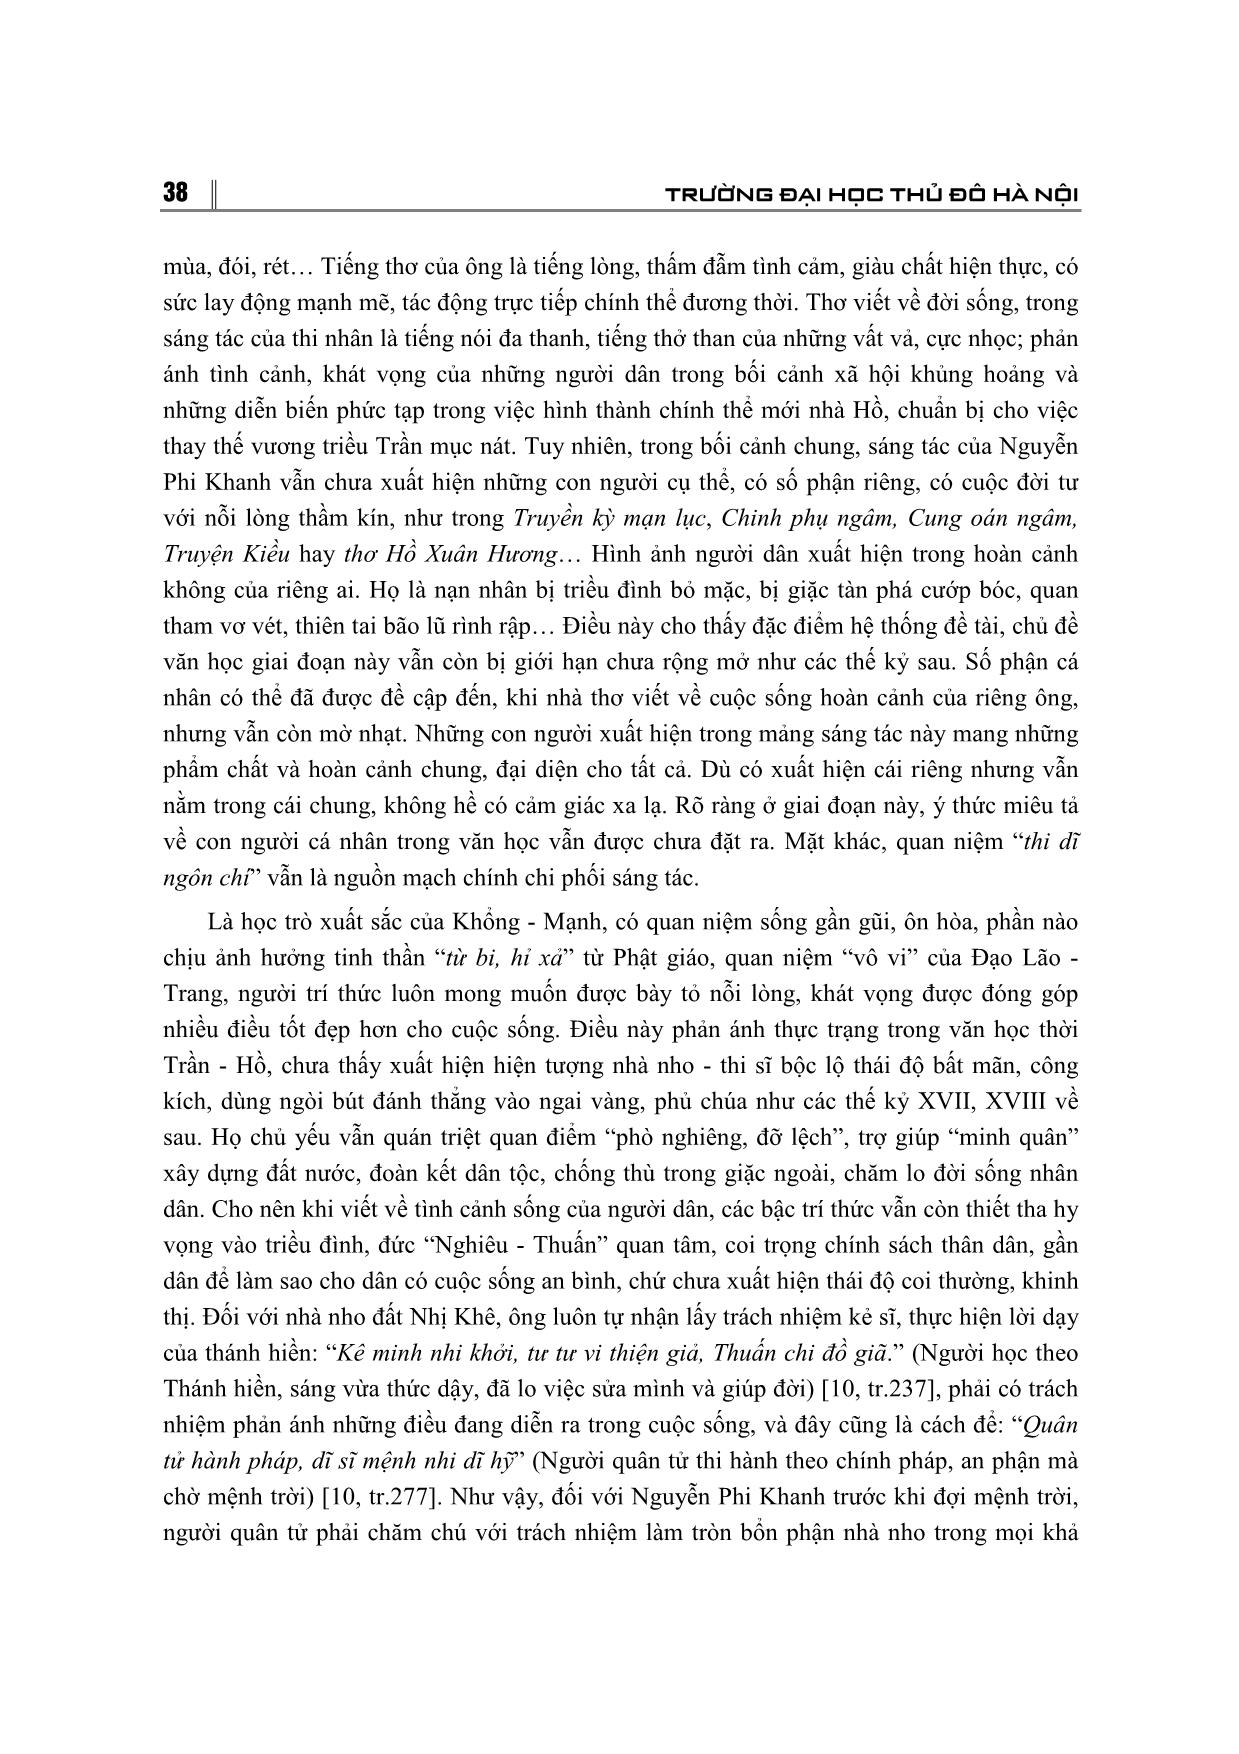 Thơ văn Nguyễn Phi Khanh - Nỗi niềm trăn trở về bản thân, thời đại và cuộc sống của nhân dân trang 7